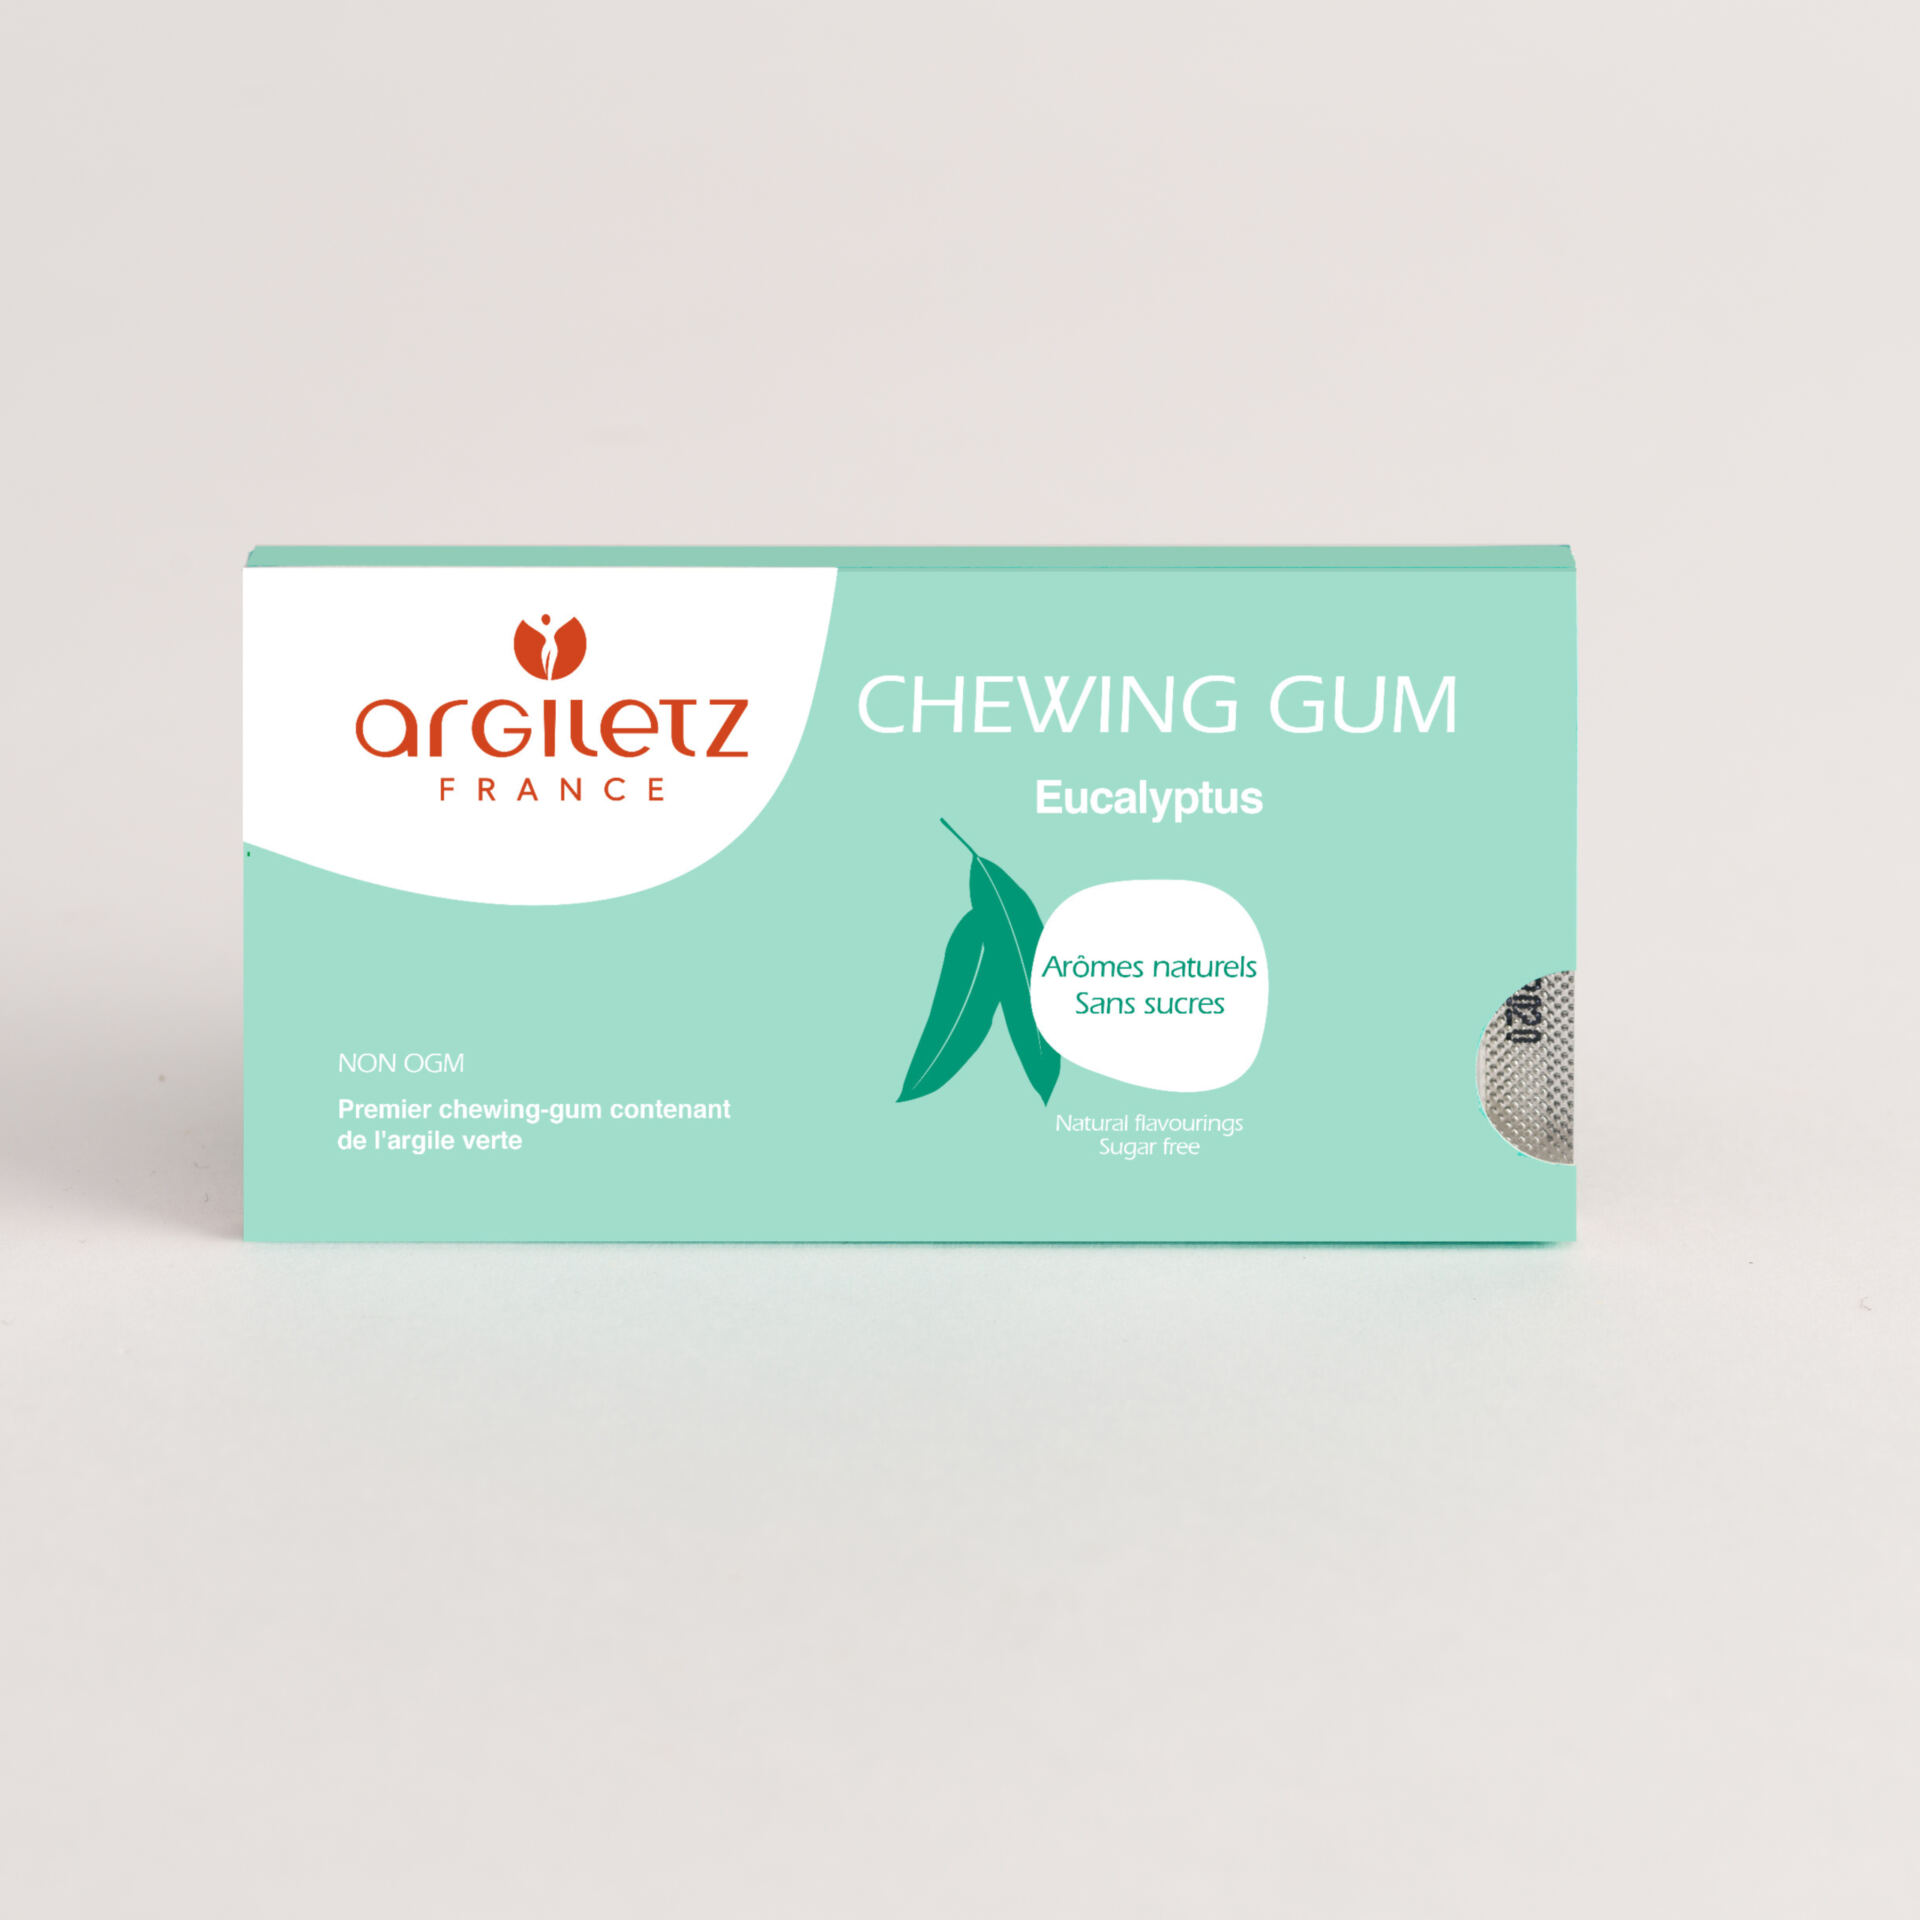 ARGILETZ_Chewing gum eucalyptus